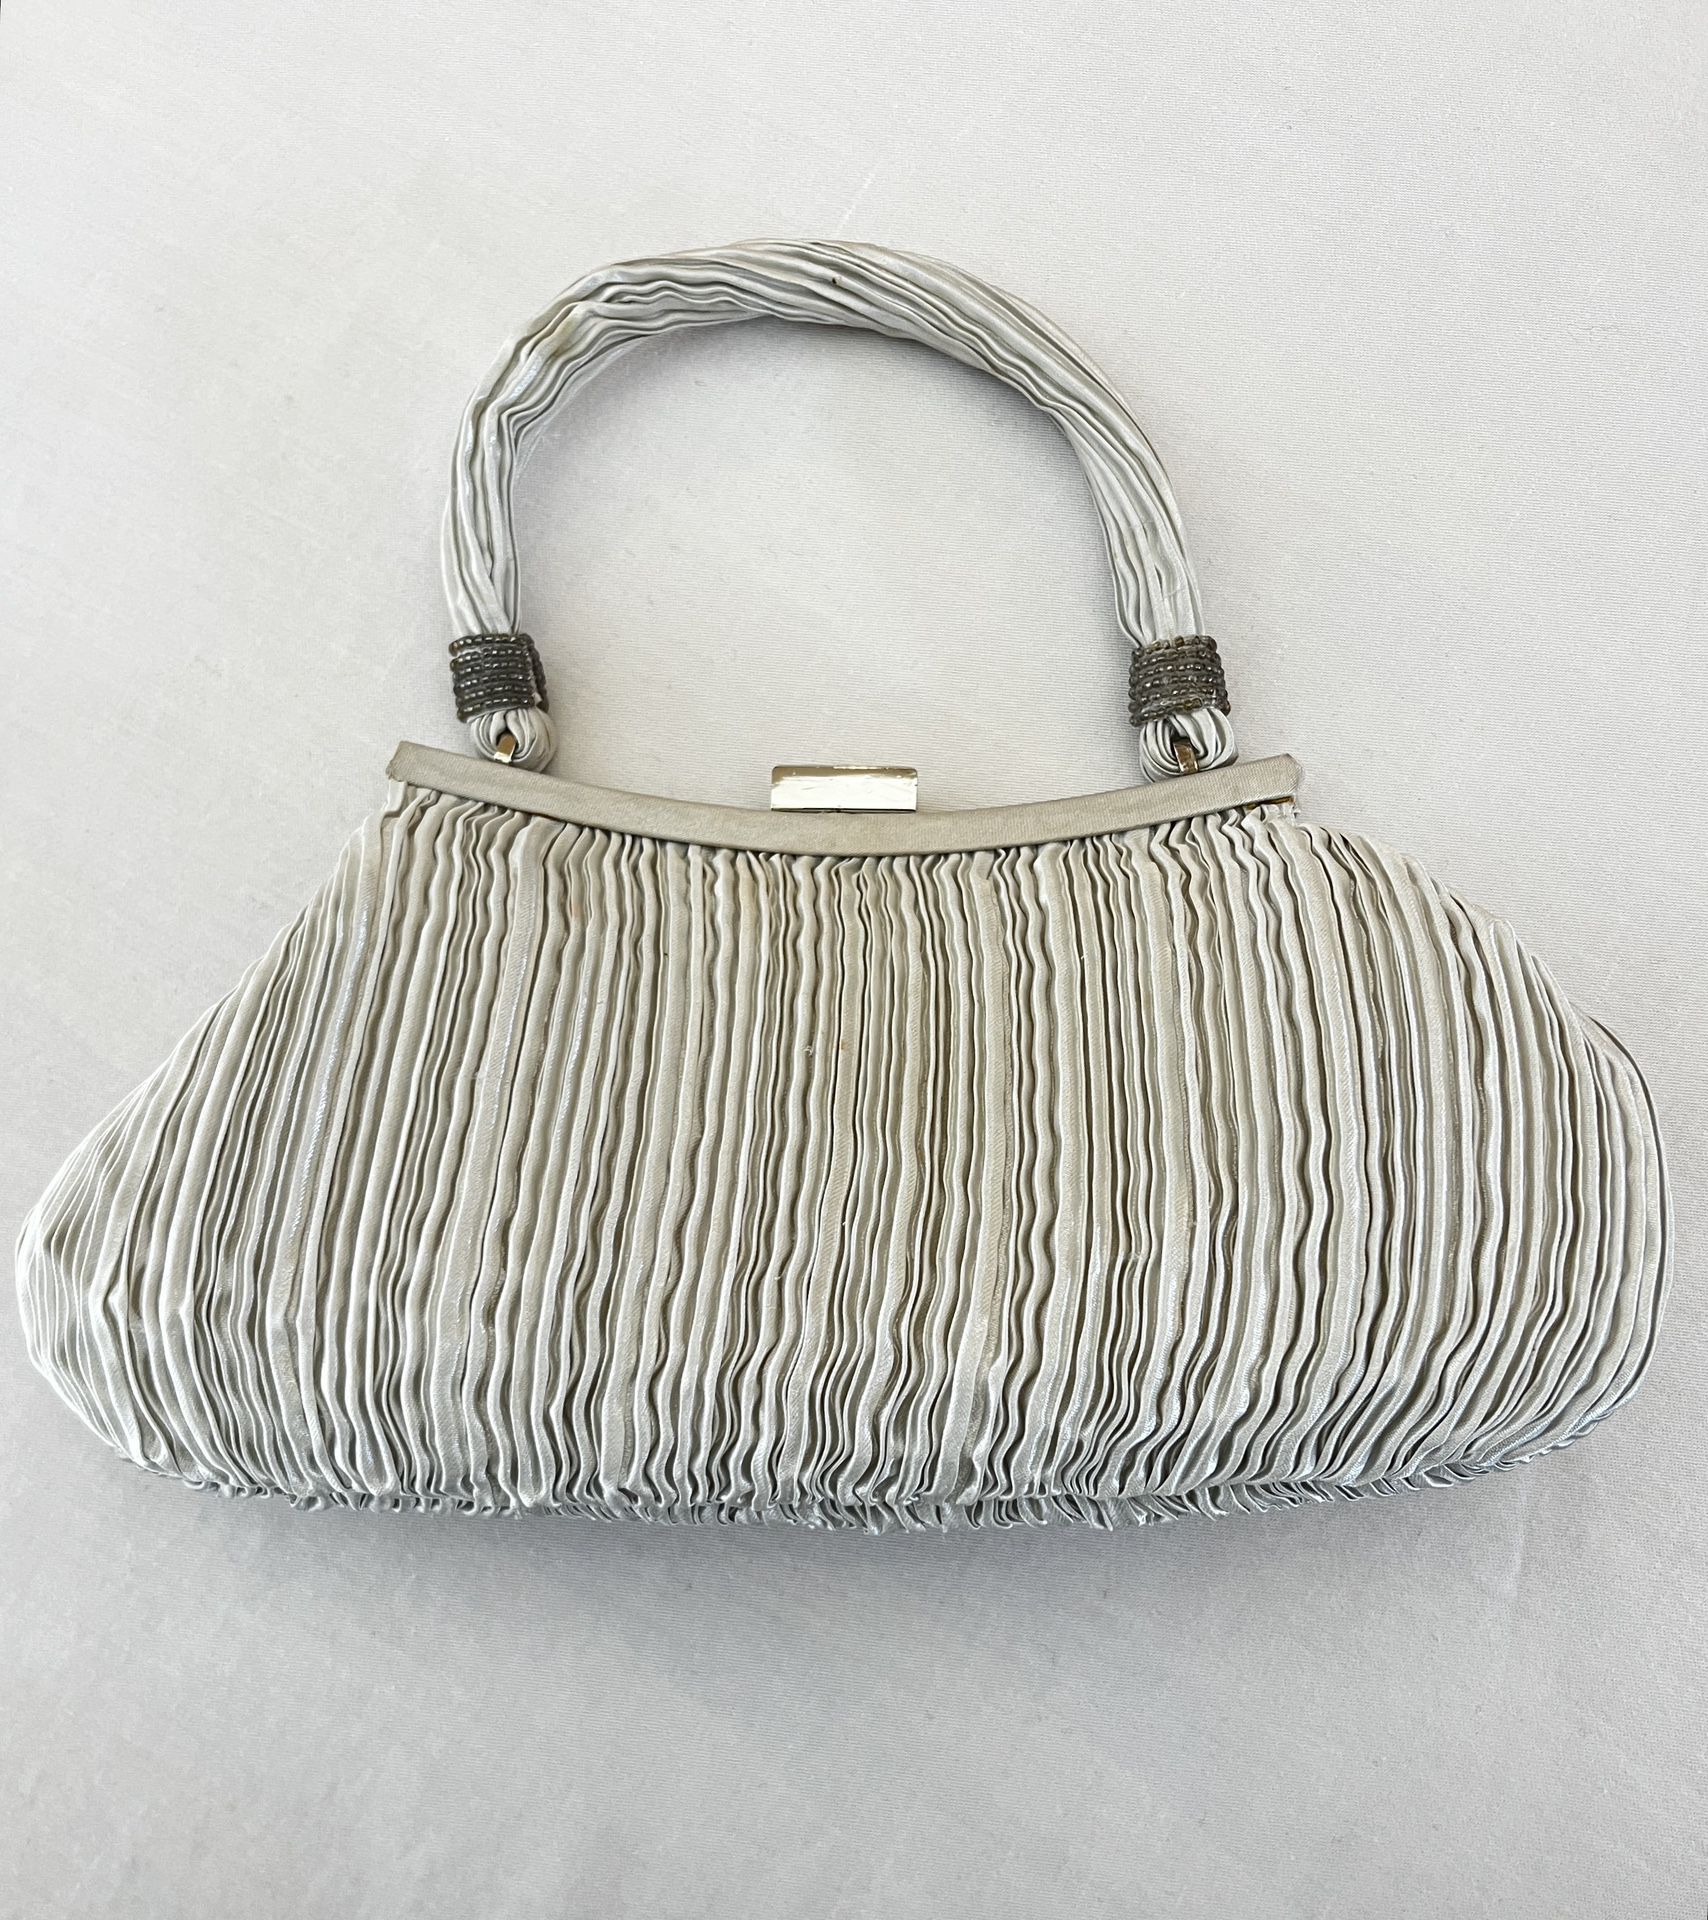 La Regale Vintage Hand Made Silver Silk/Satin Evening Satchel Handbag 